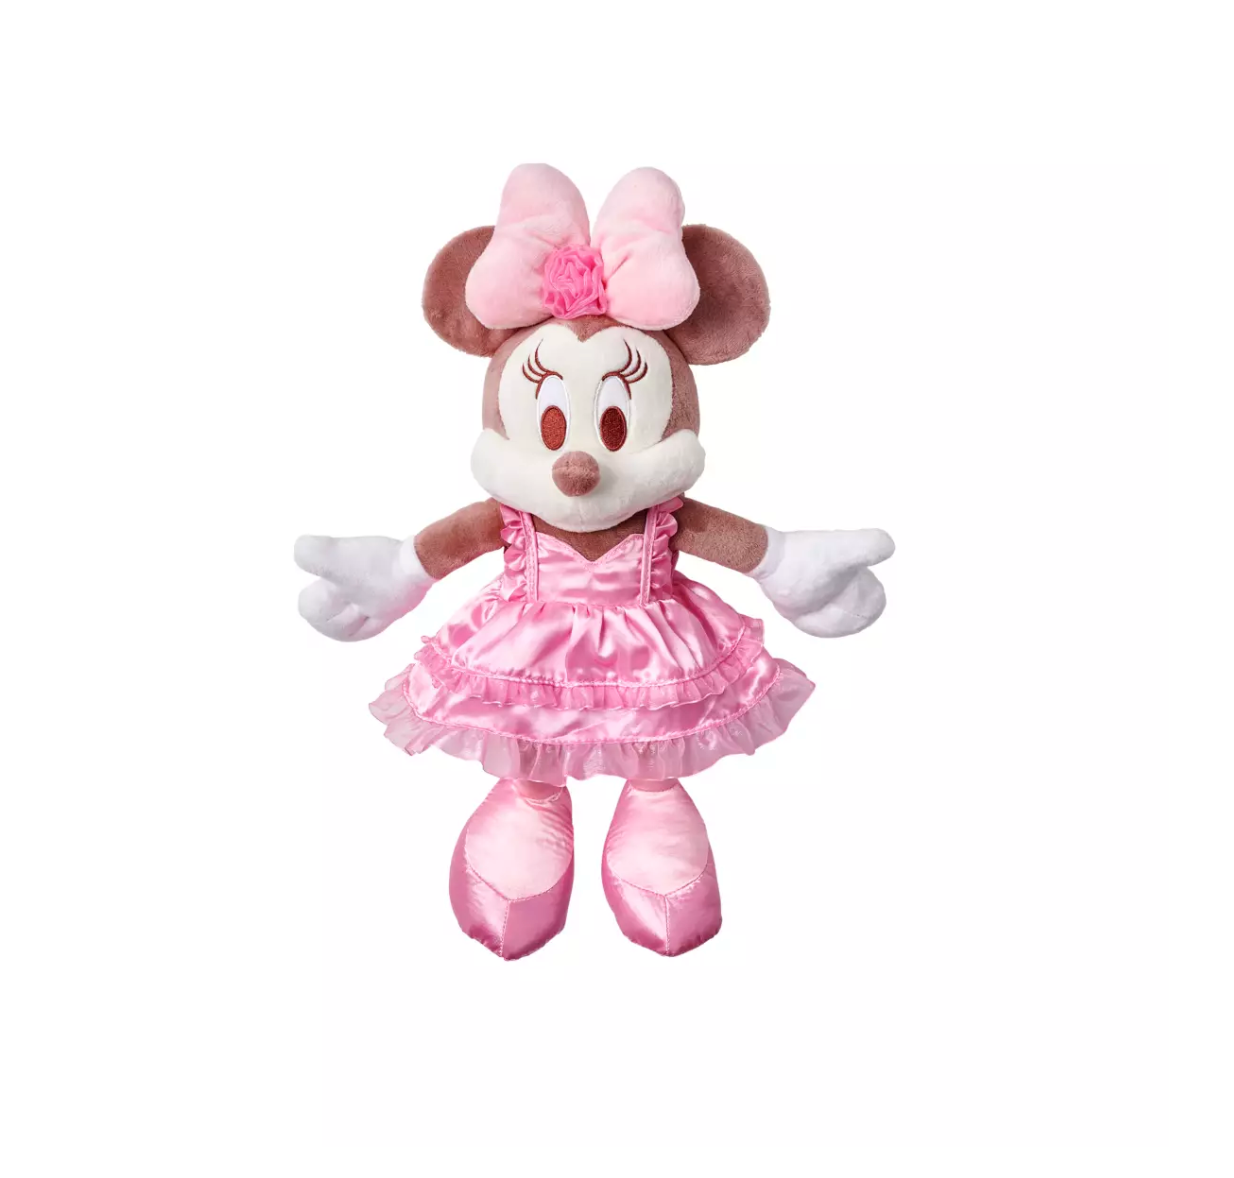 Disney Valentine's Day Minnie Pink Satin Dress Plush New with Tag